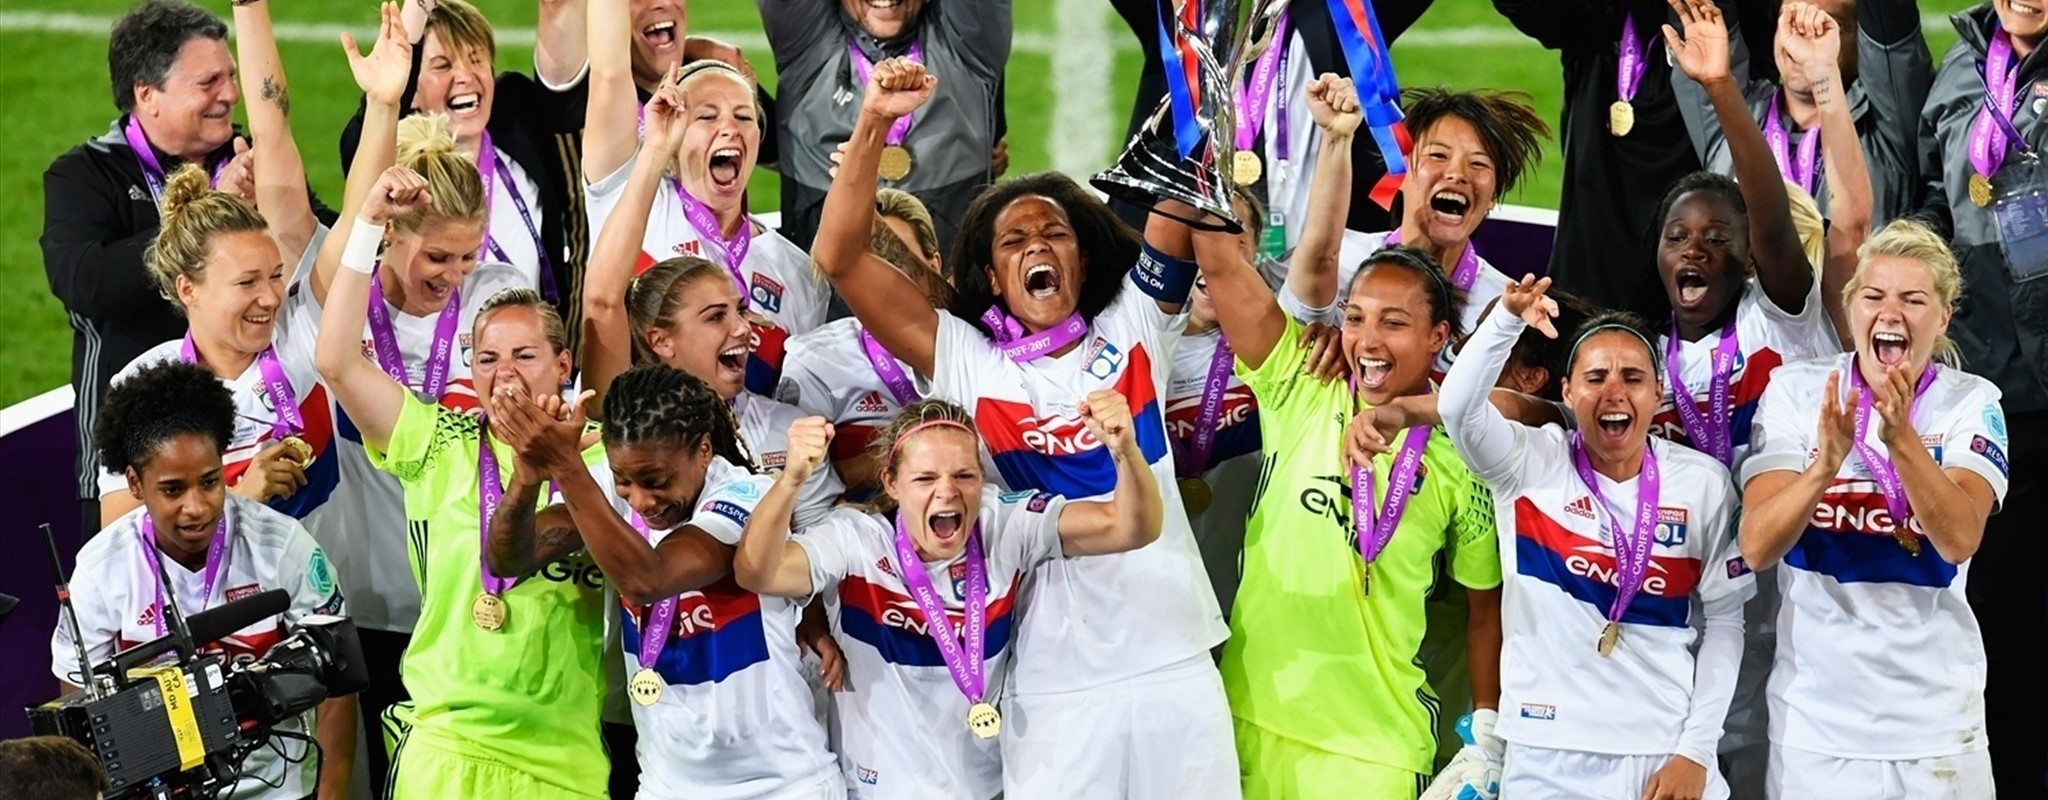 Los penaltis prolongan el reinado del Lyon en Champions femenina